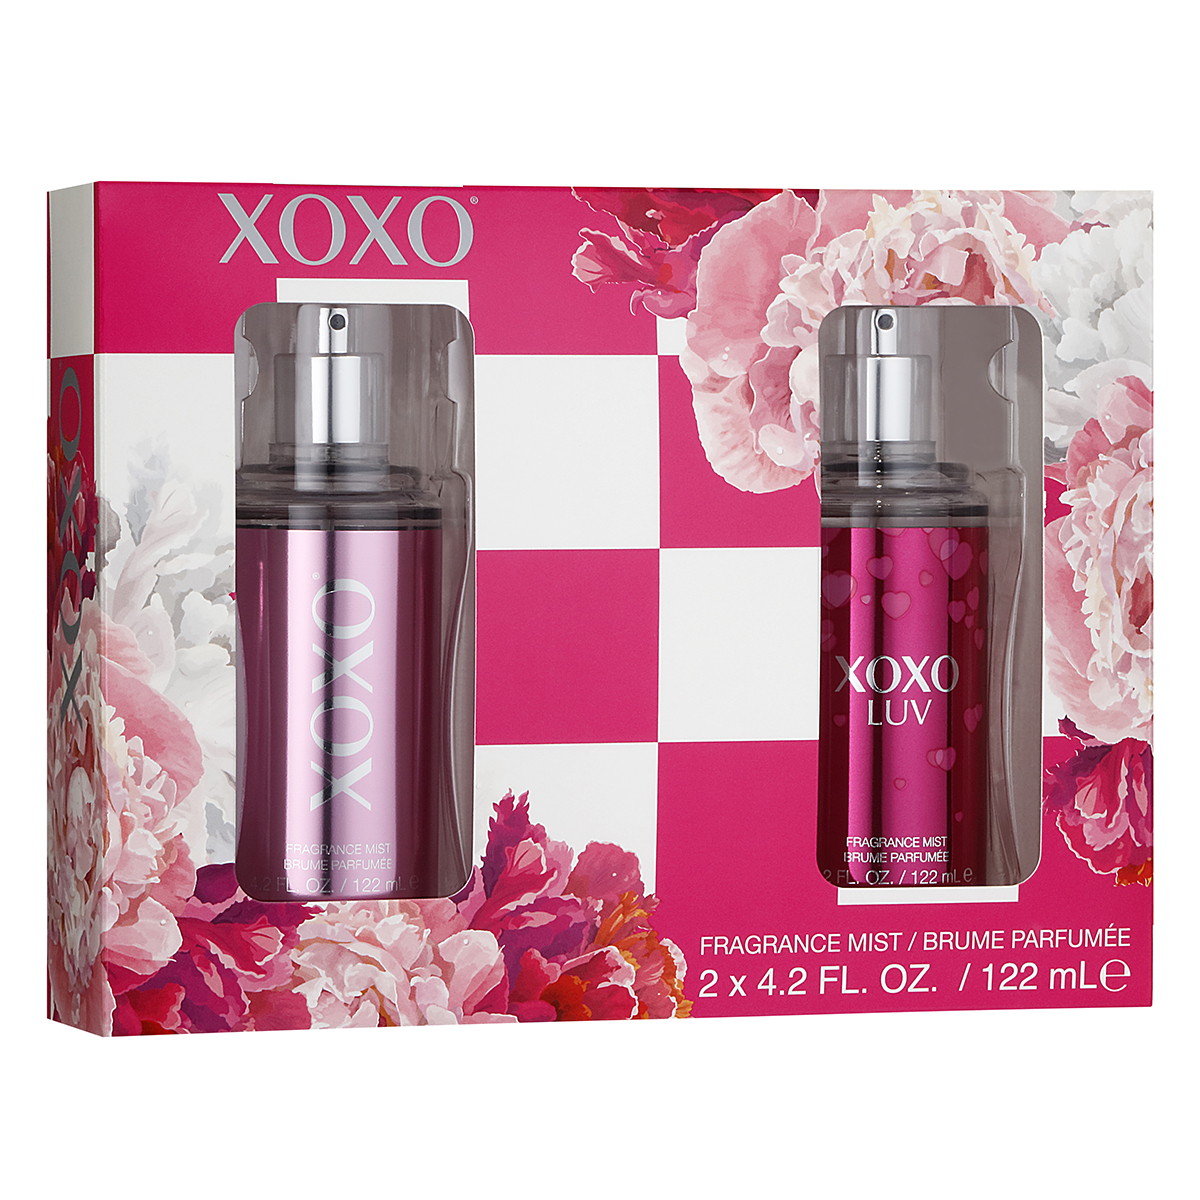 XOXO Body Spray 2pc. Gift Set - Value $20.00